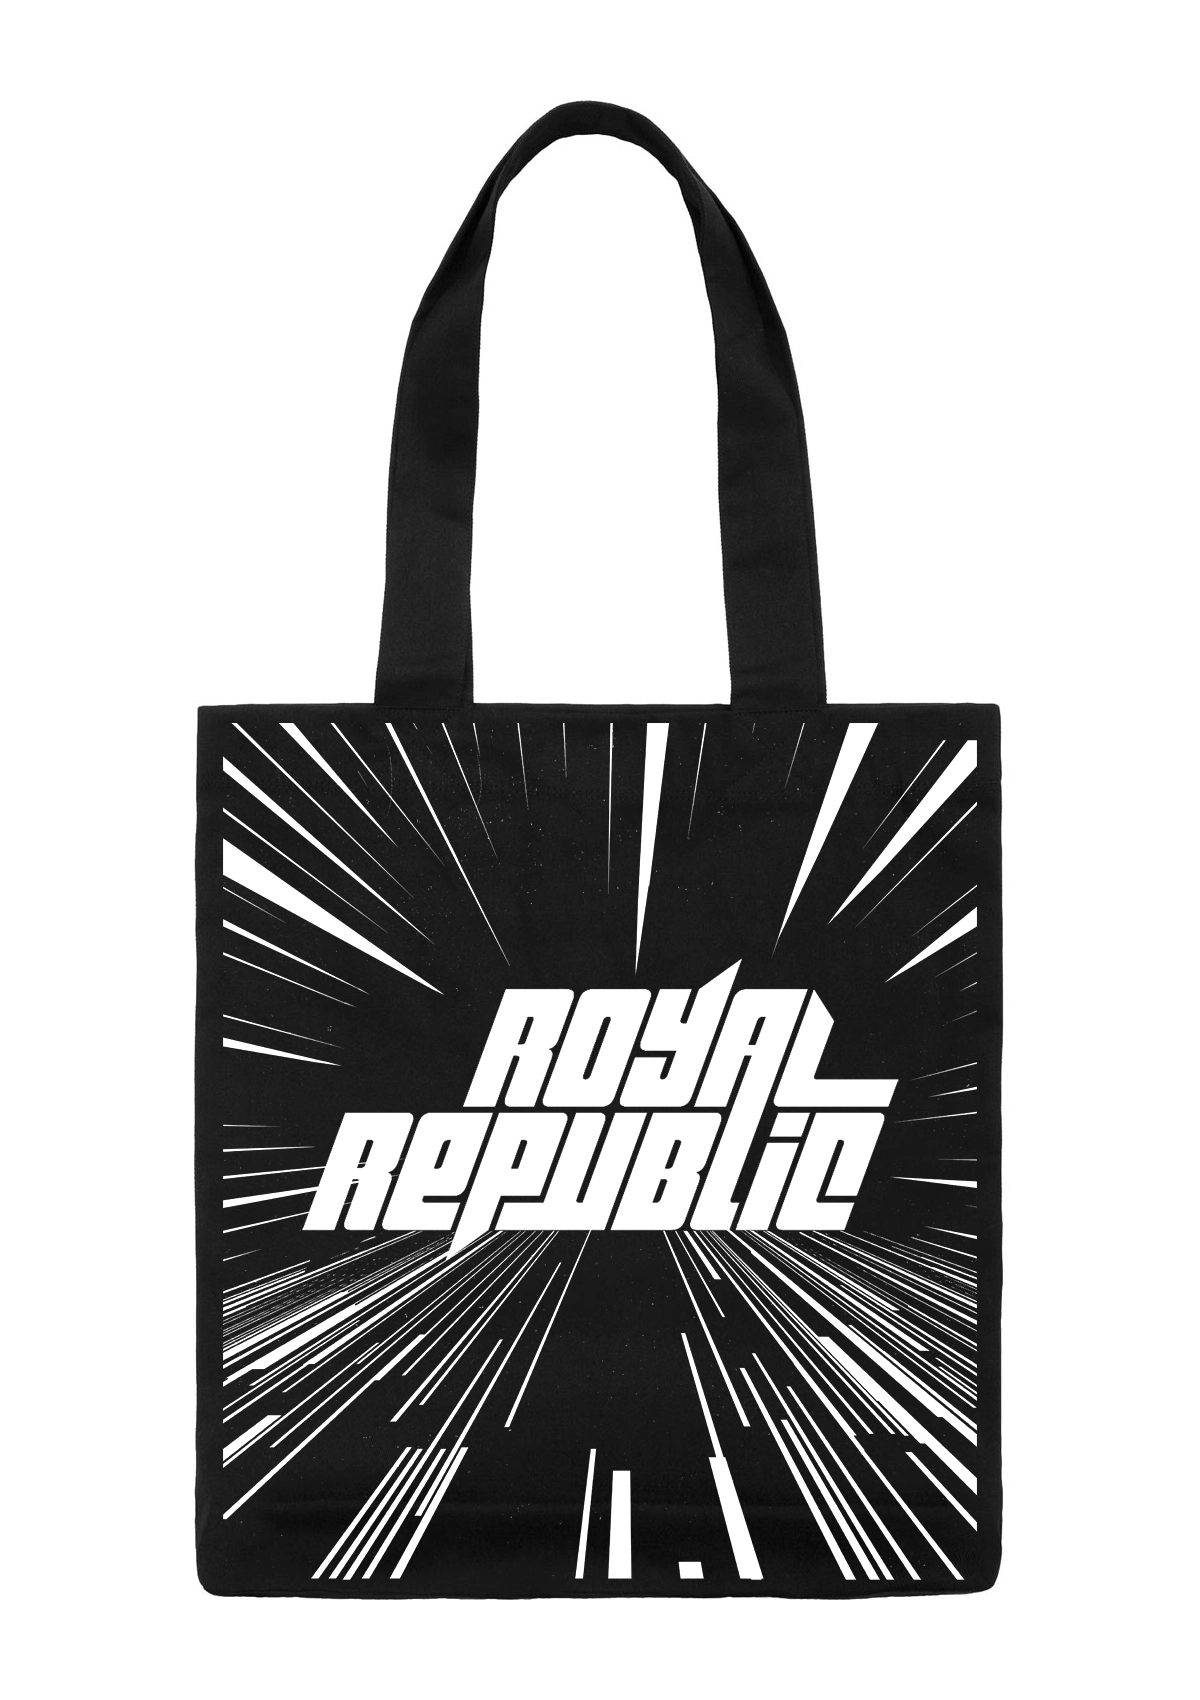 ROYAL REPUBLIC - Backdrop Logo [TOTE BAG]